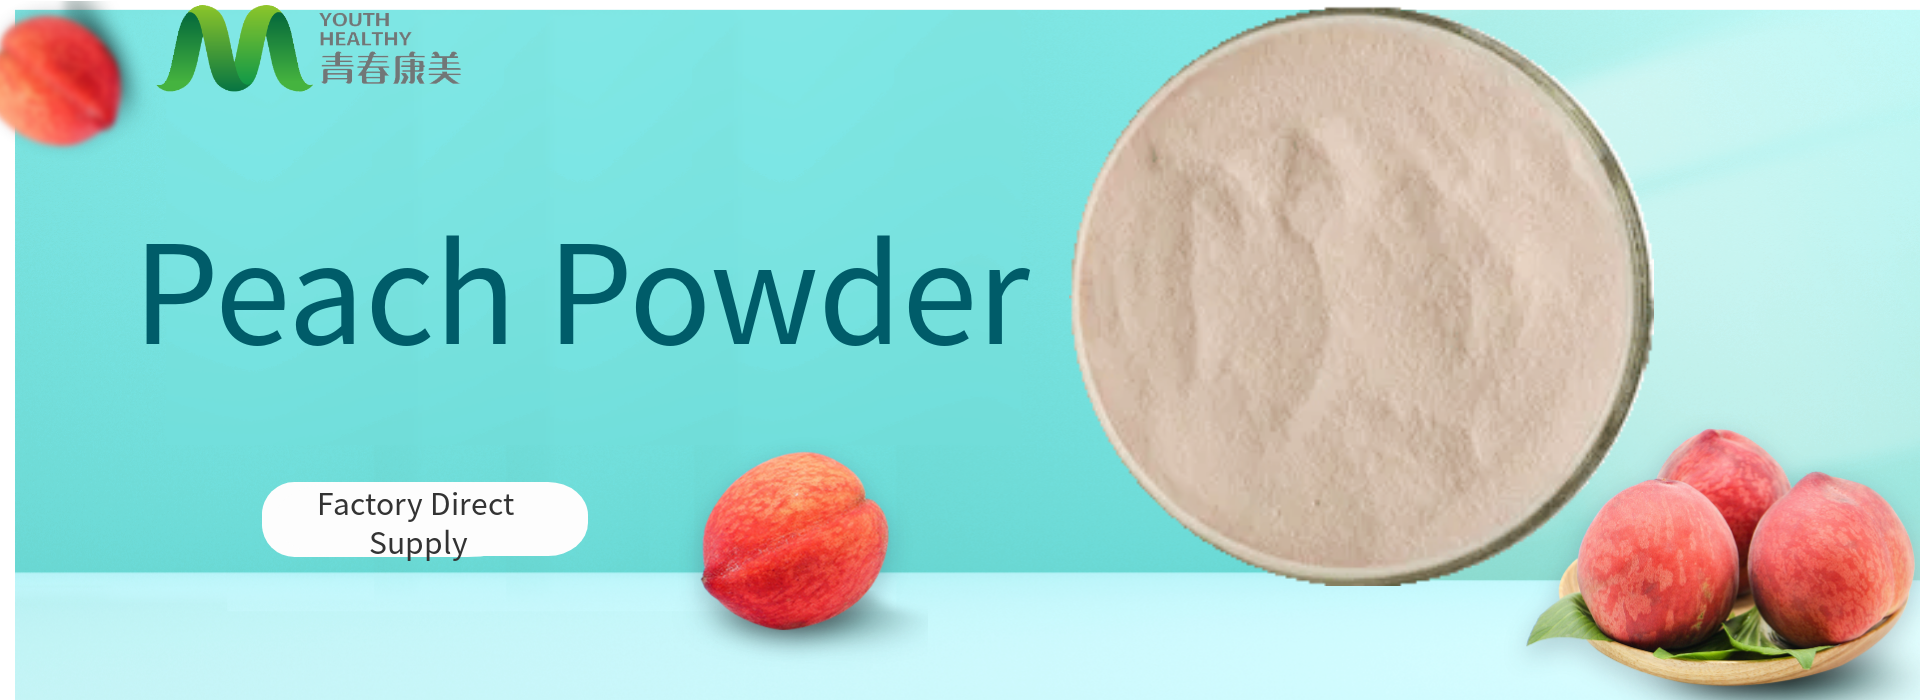 1.Peach Powder